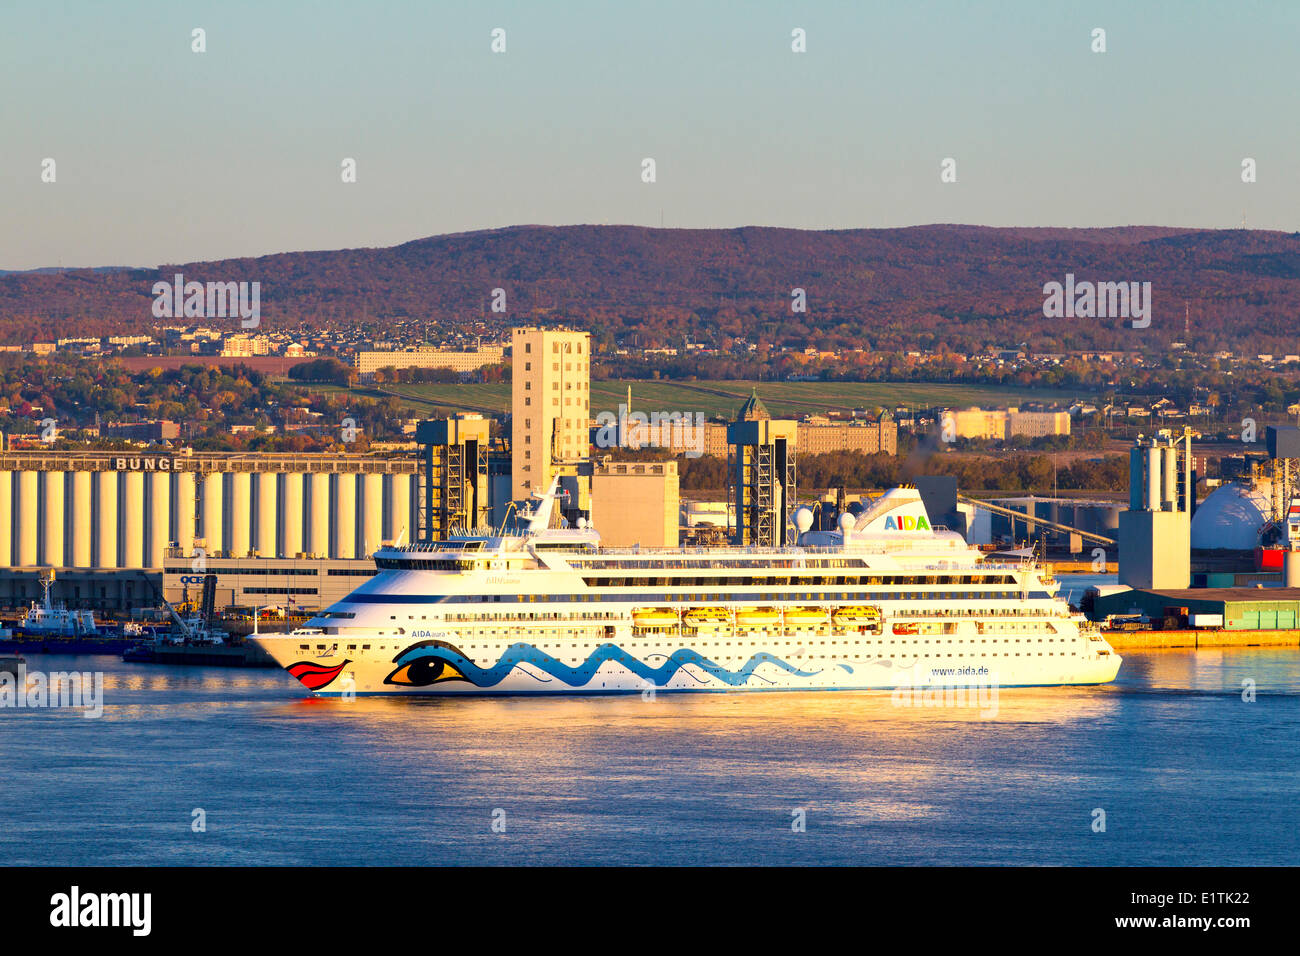 Cruise Ship, Quebec City, Quebec, Canada Stock Photo